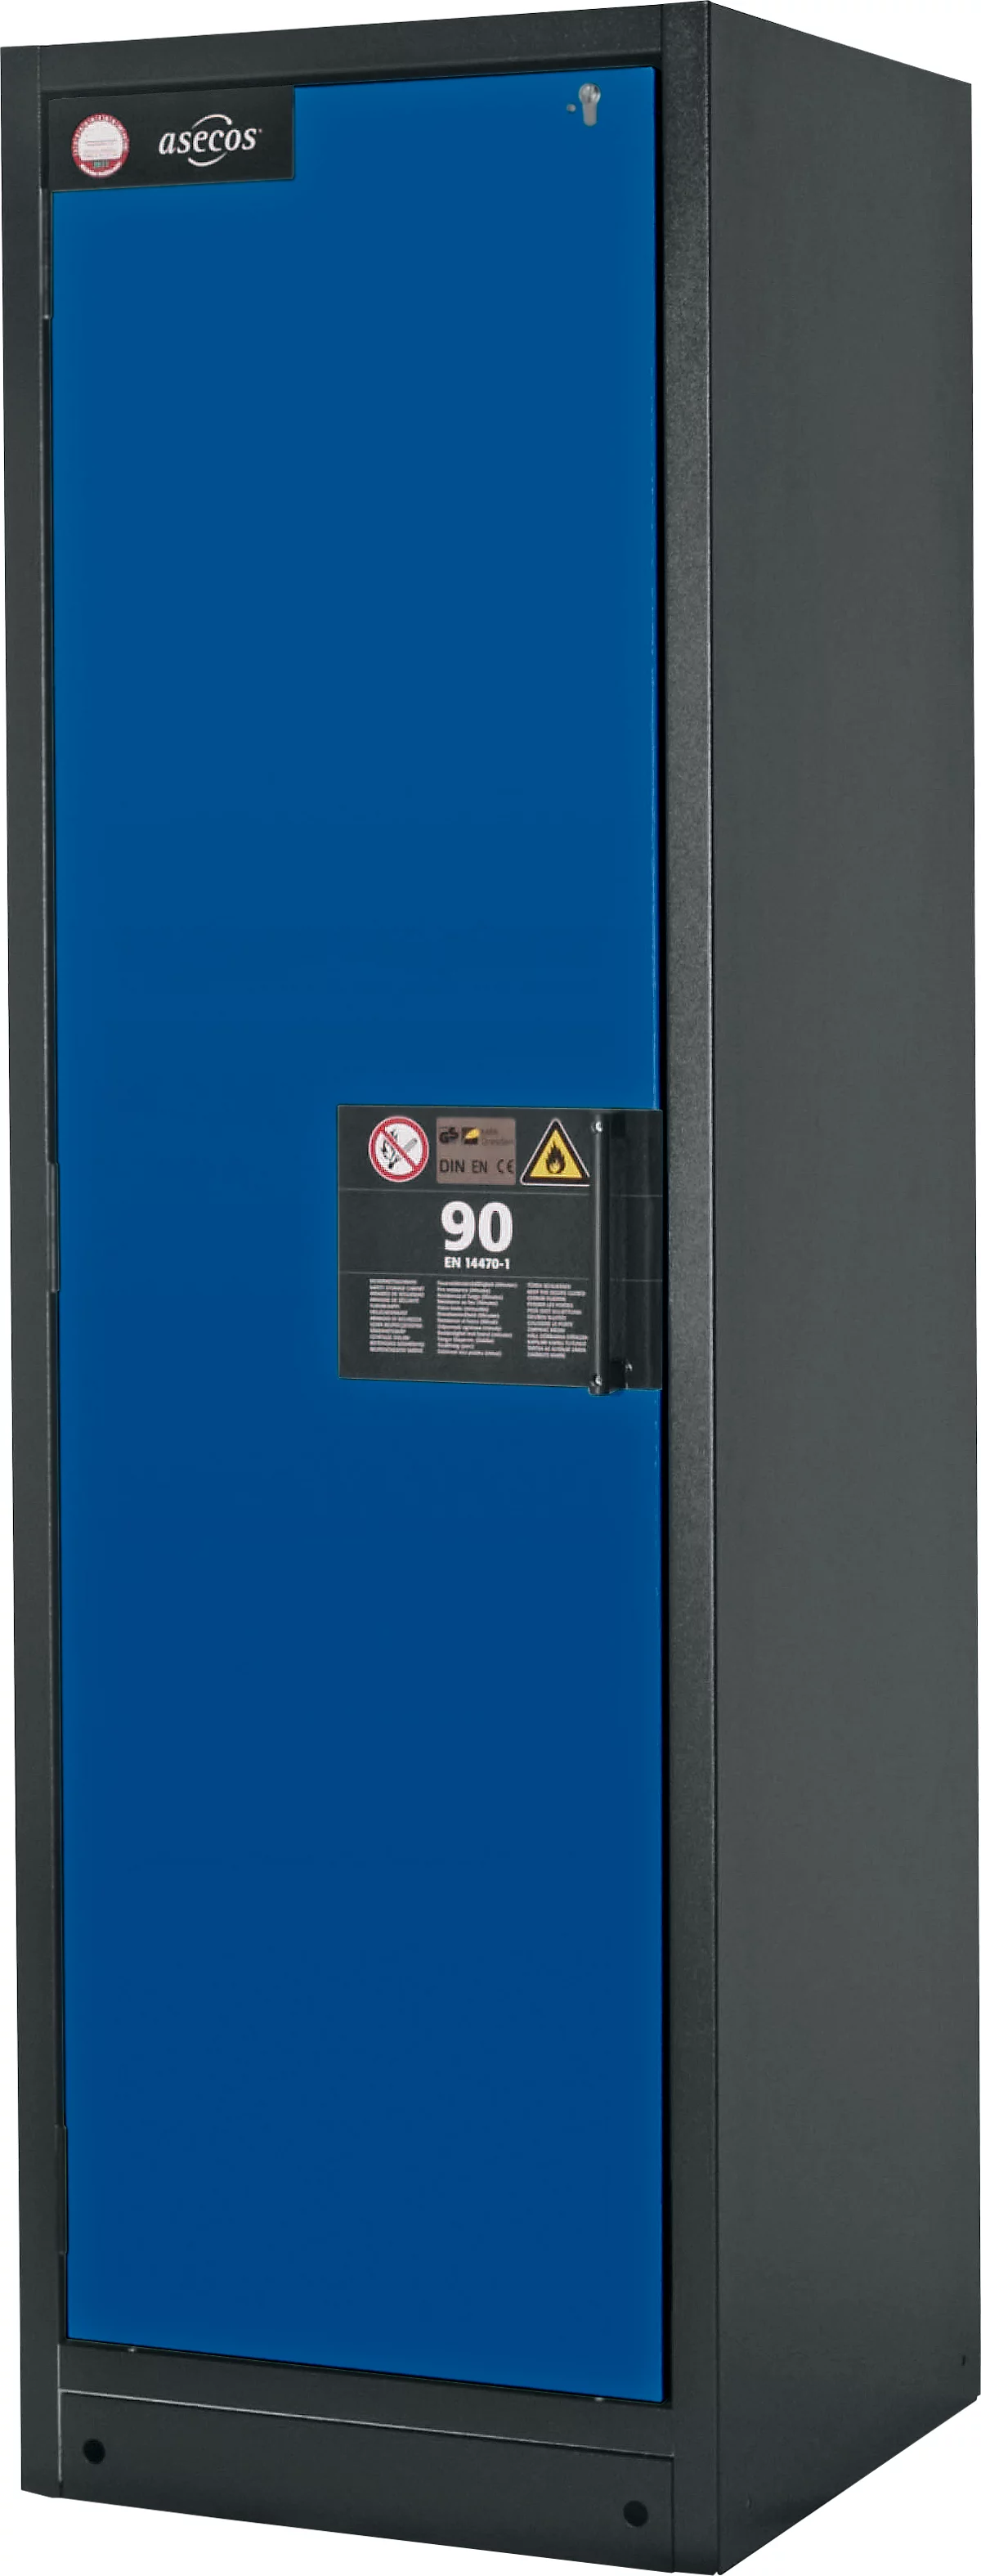 Sicherheitsschrank Typ 90 Asecos Q-CLASSIC-90 asecos, B 600 mm, Tür links, 3 Böden, enzianblau